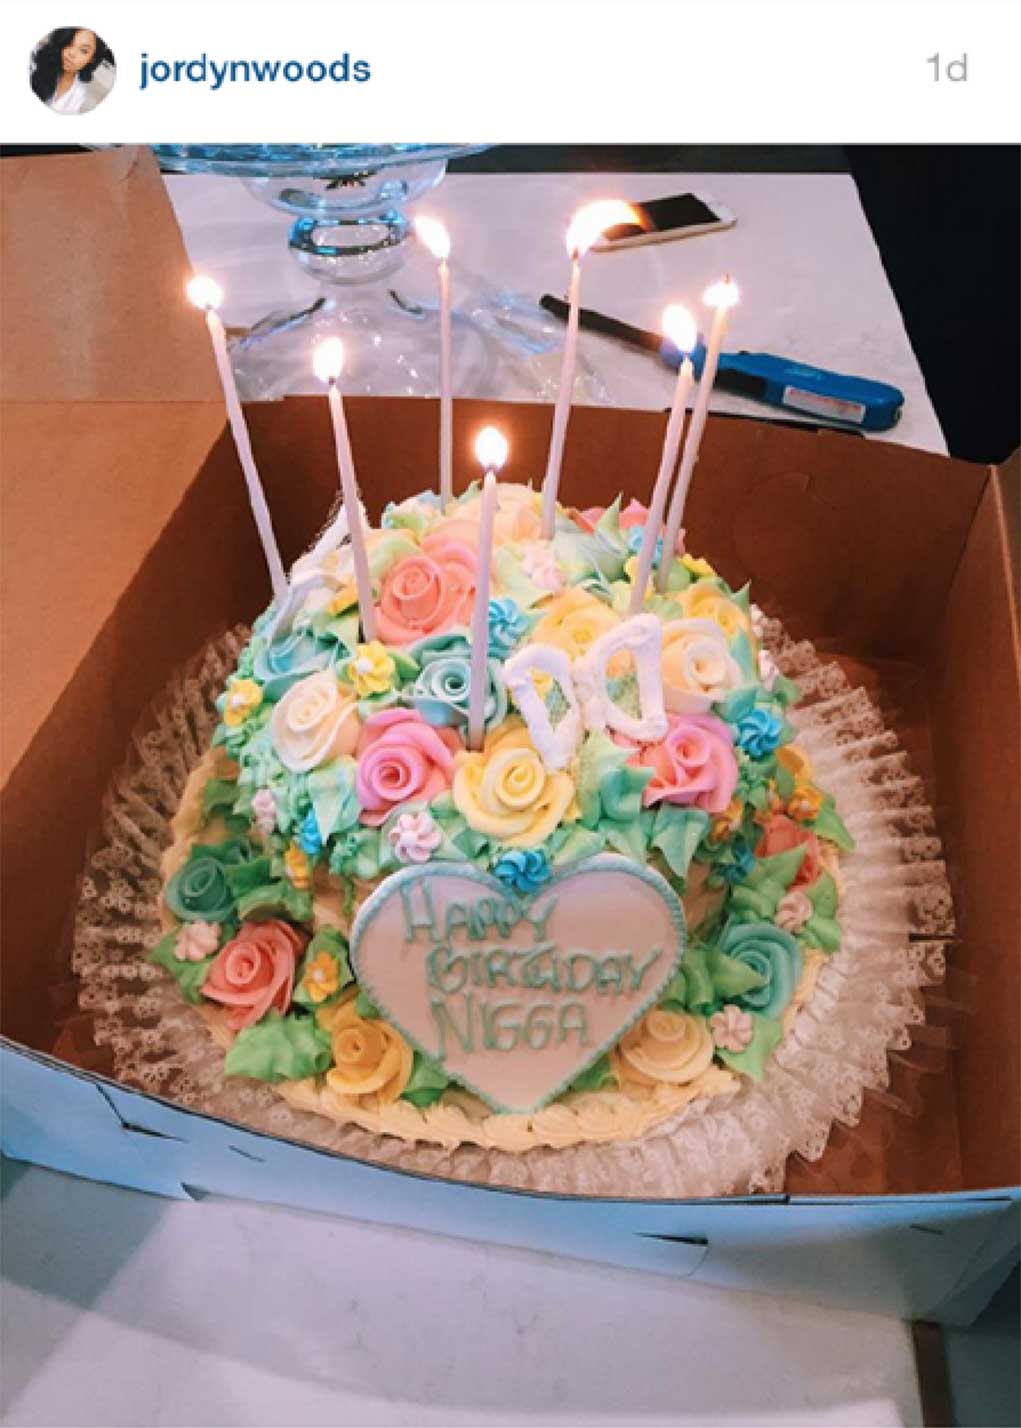 Jordyn-Woods-Happy-Birthday-Nigga-Cake